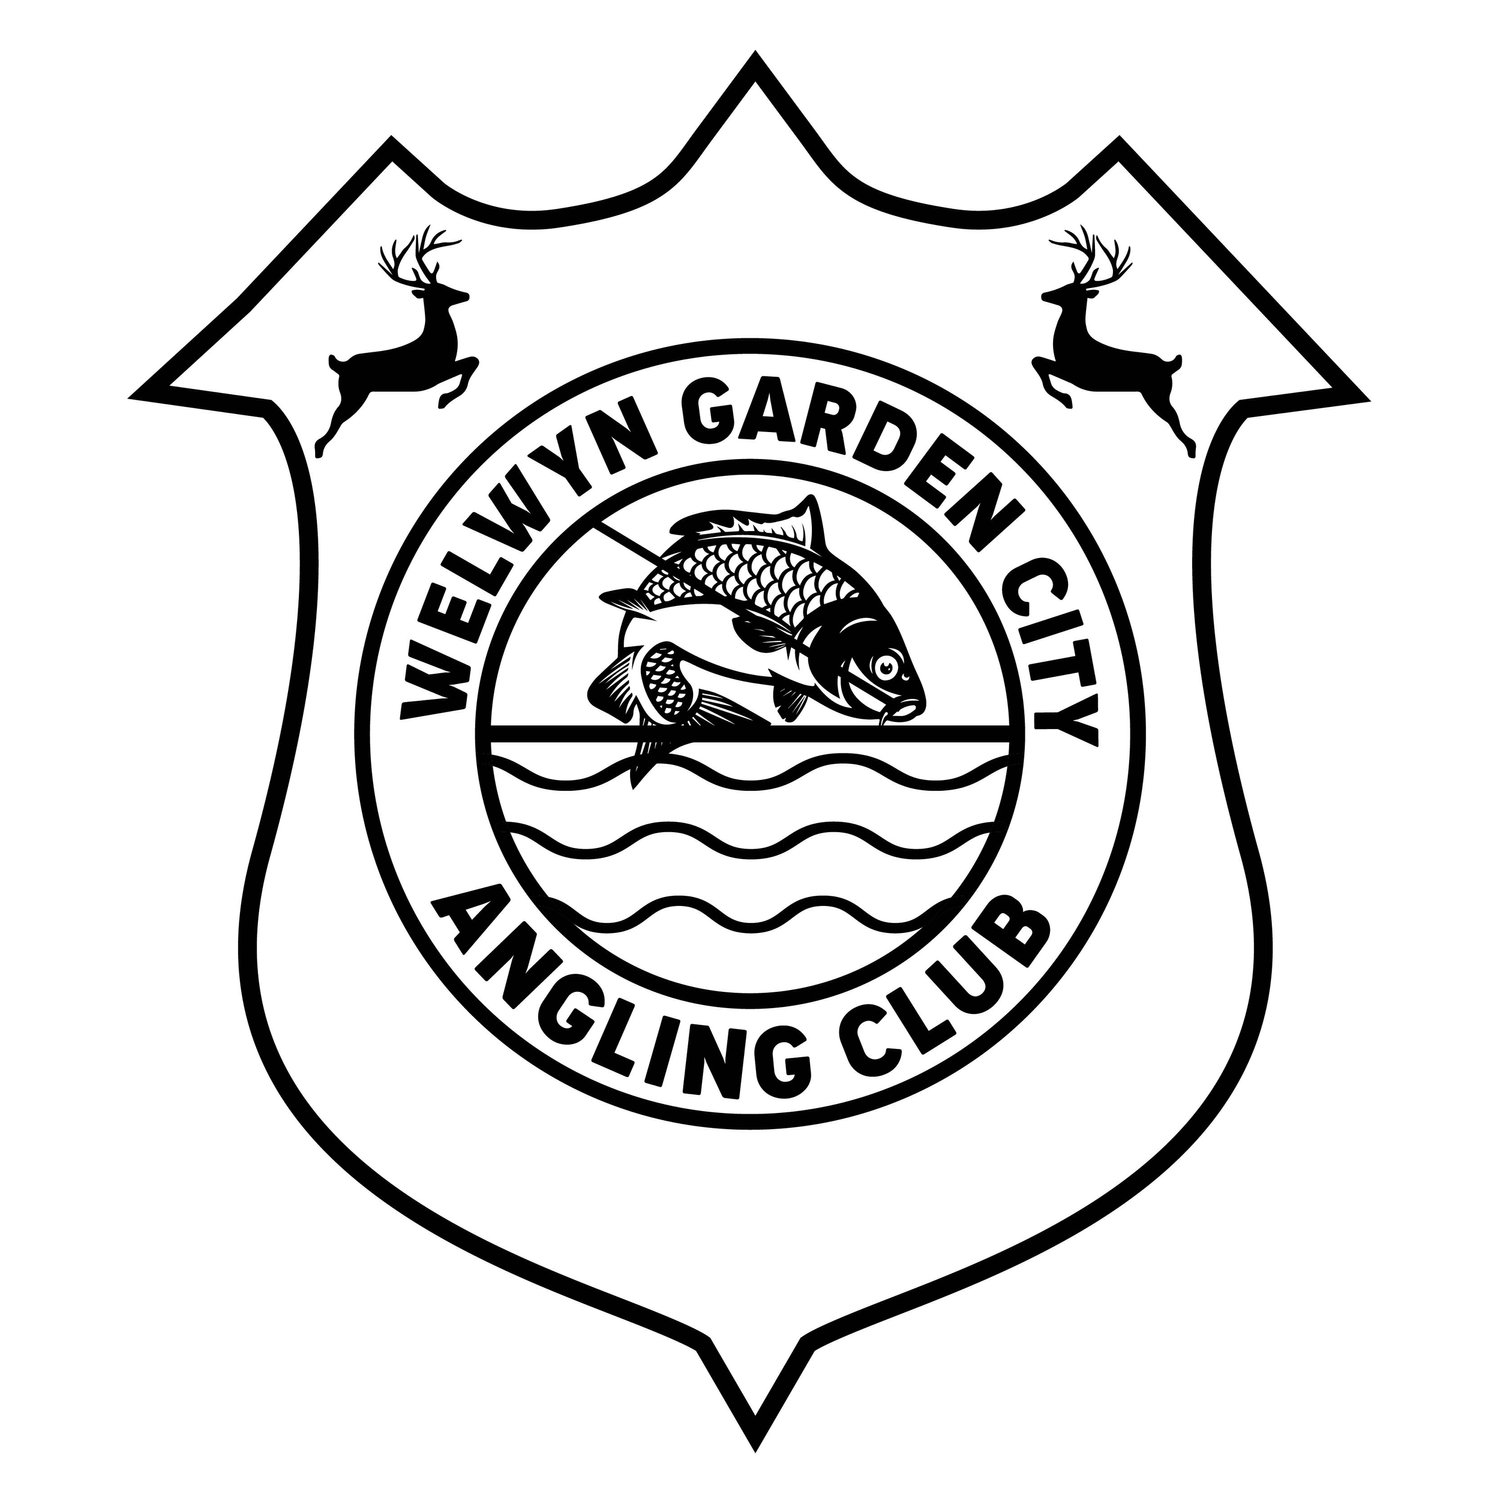 Welwyn Garden City Angling Club